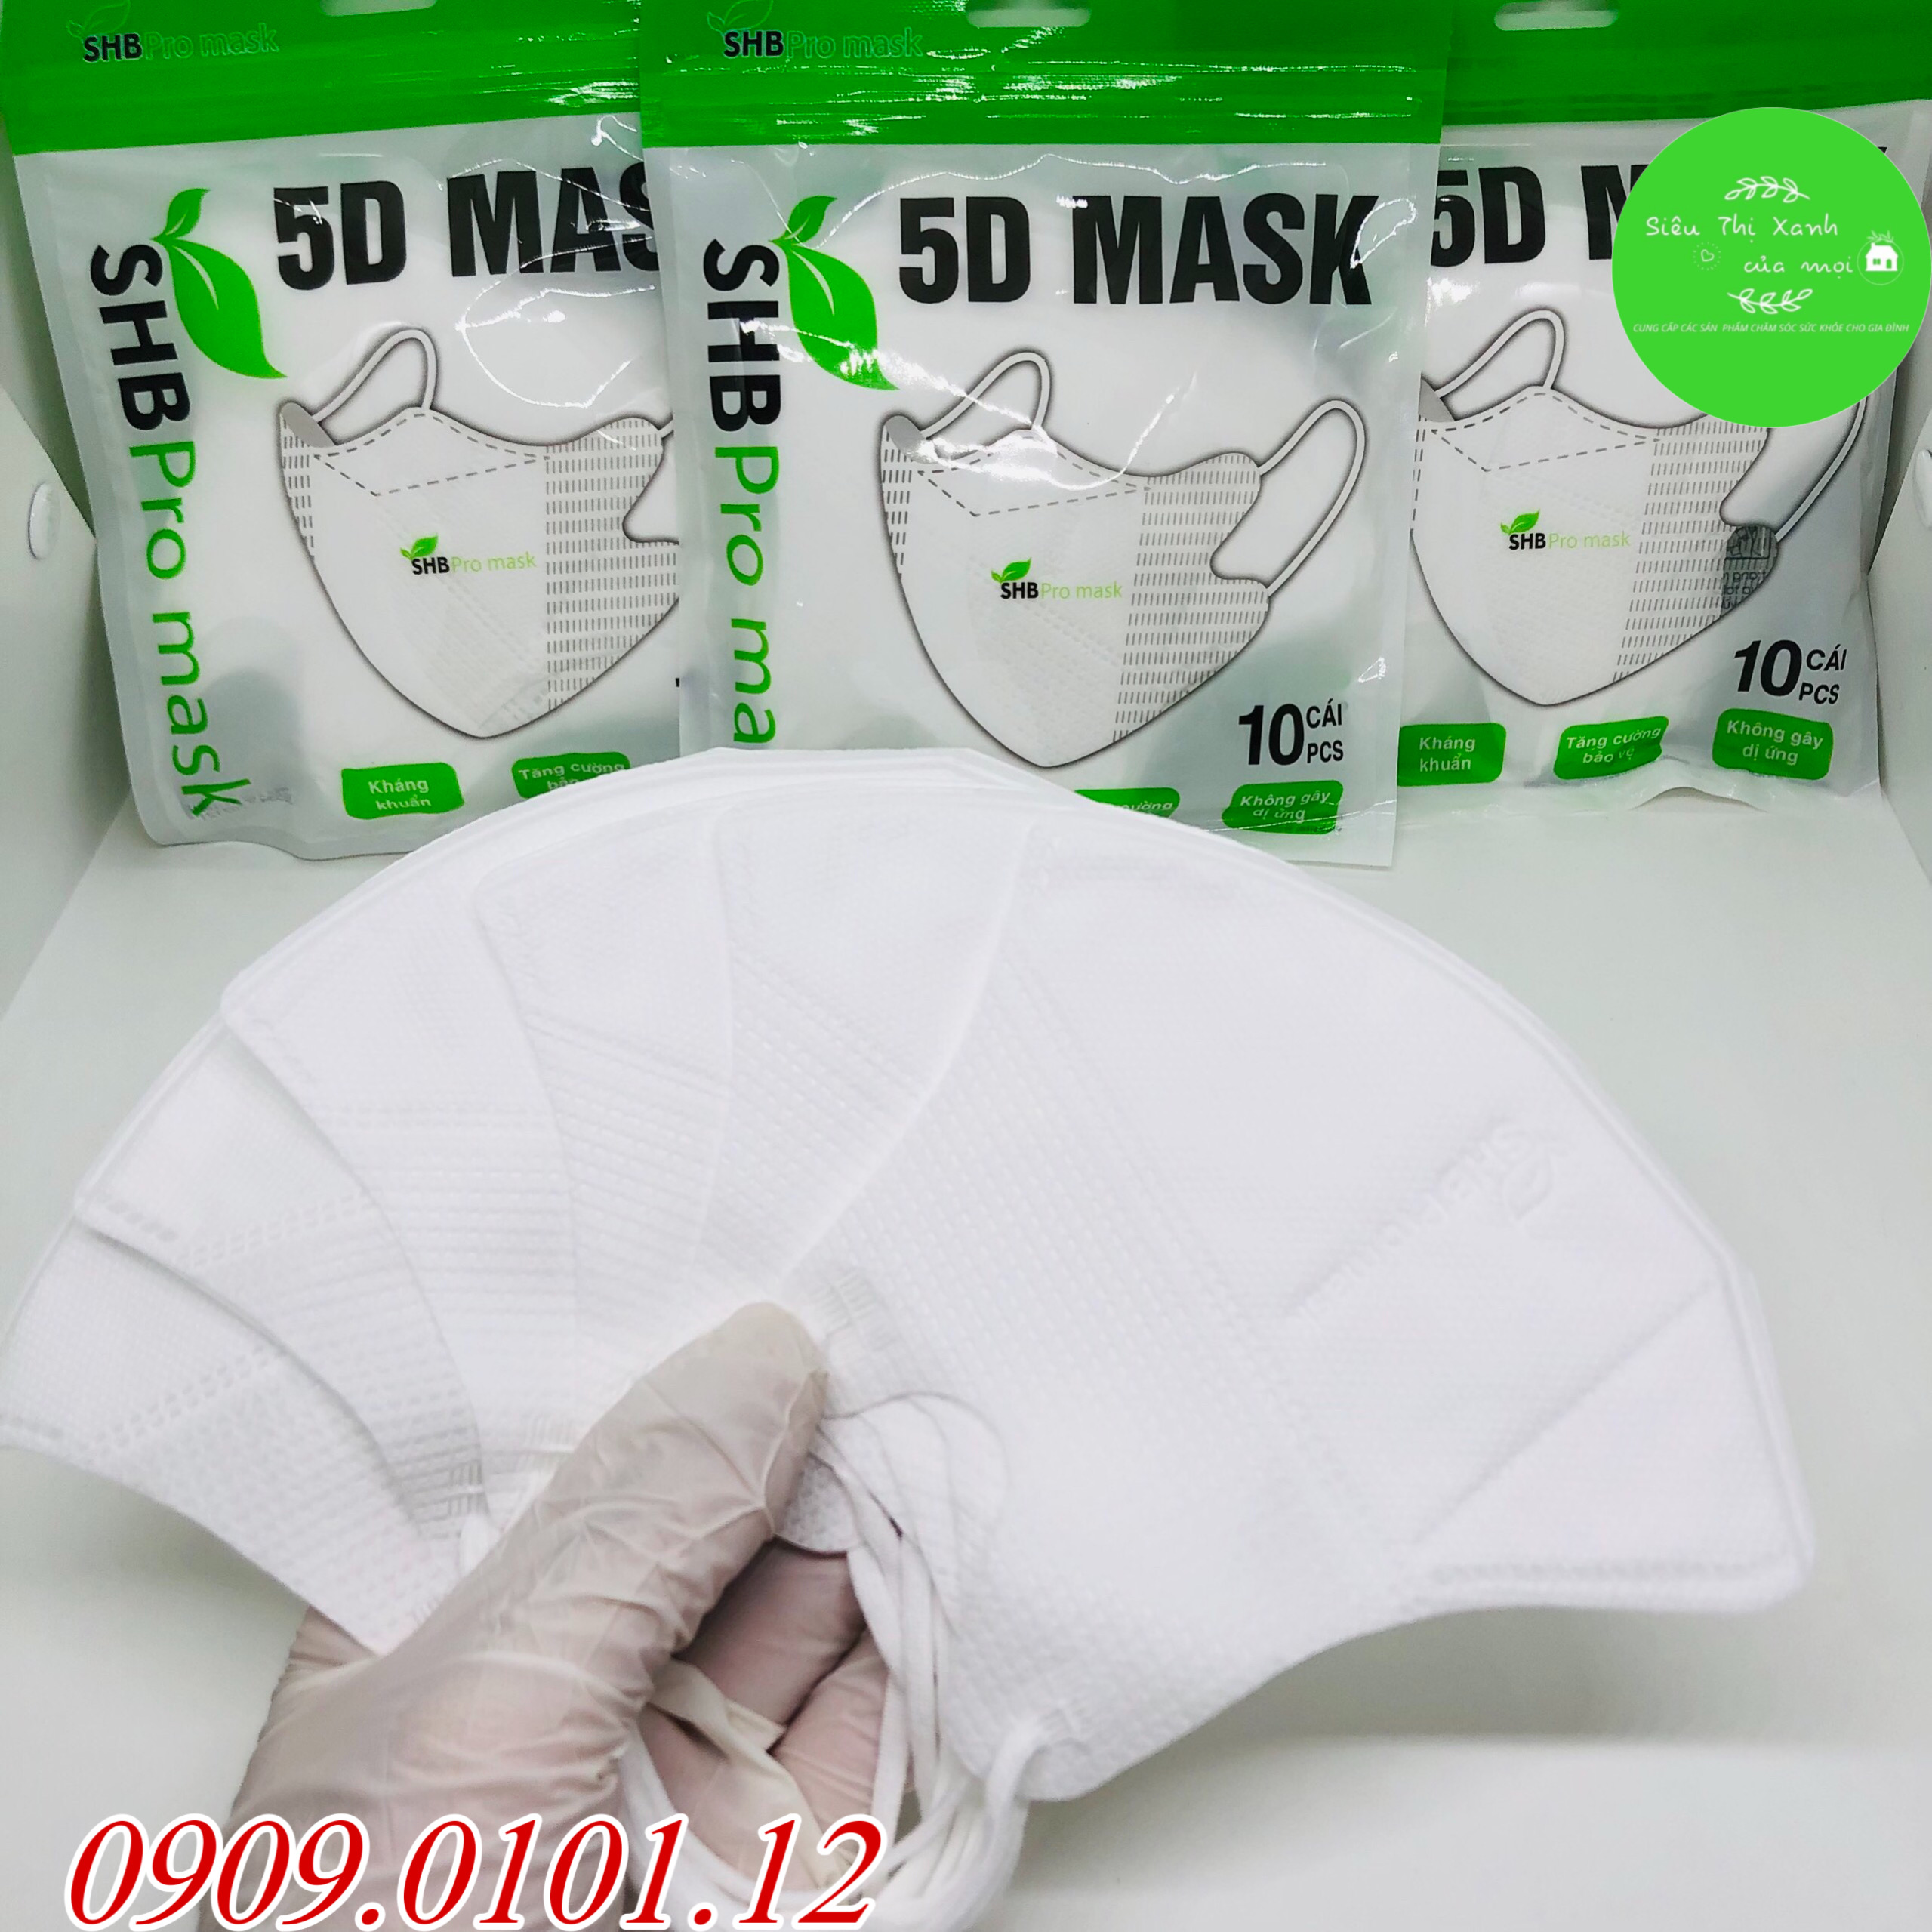 Thùng khẩu trang 5d SHB pro mask nguyên thùng, 5d mask hàn quốc cao cấp